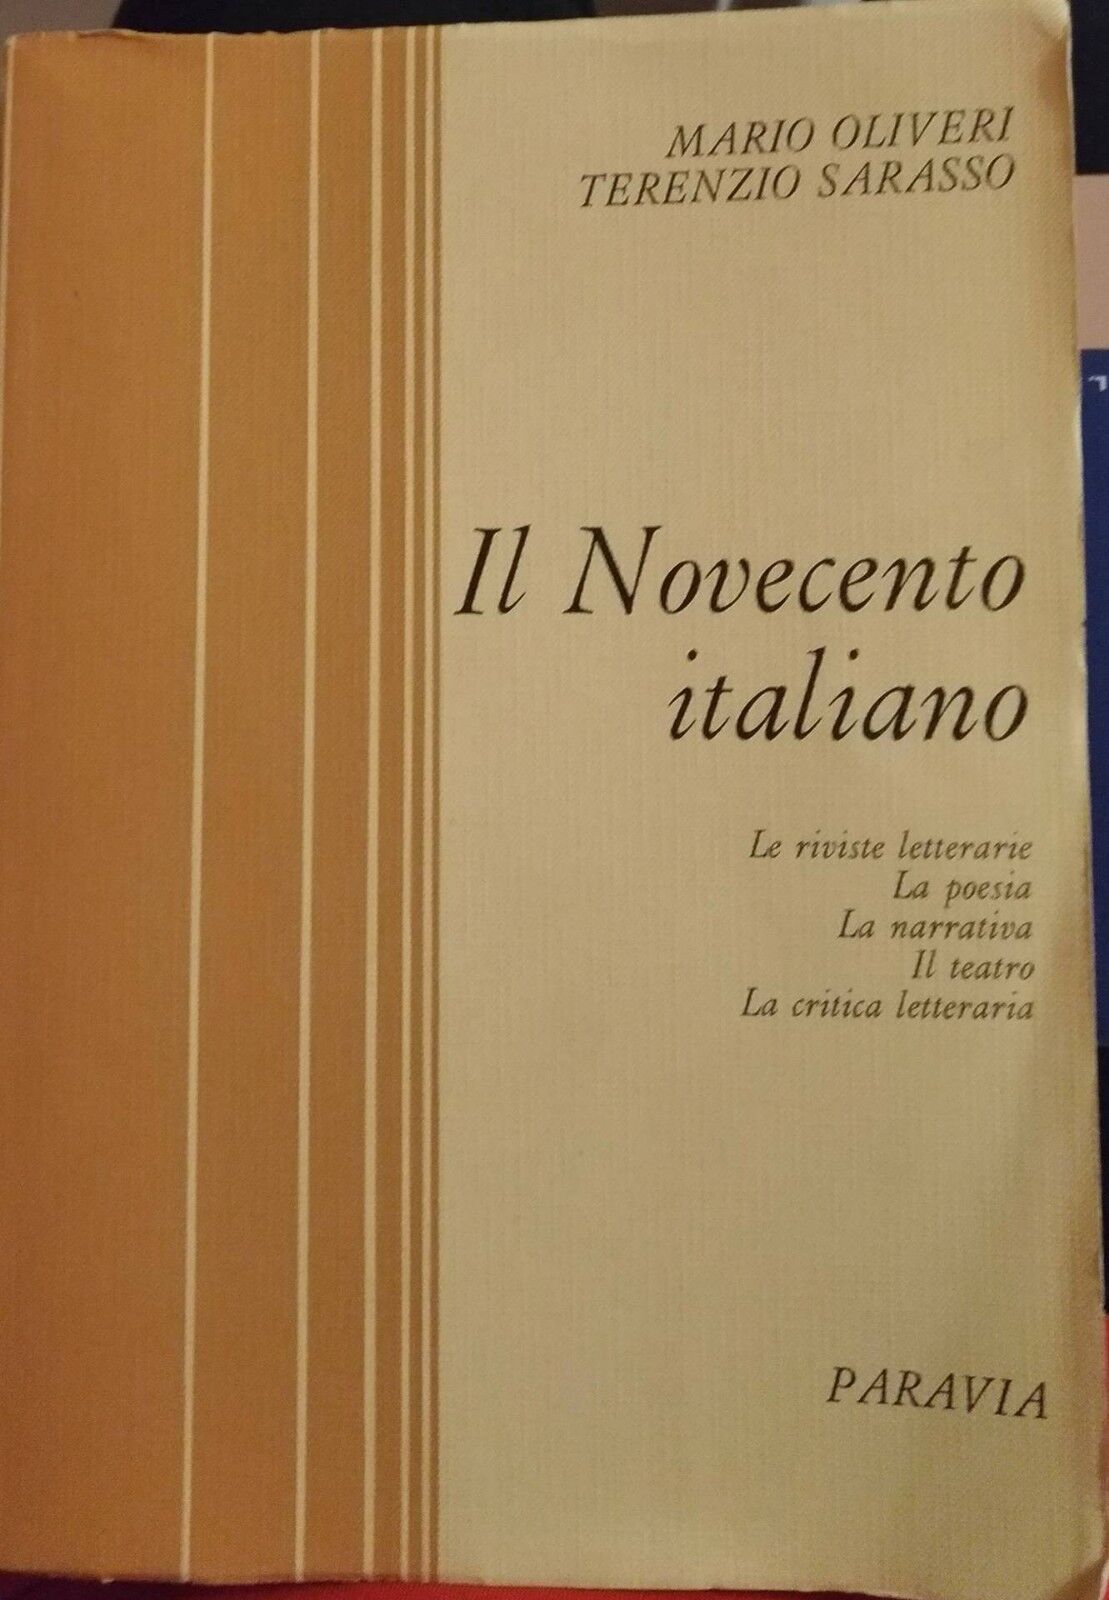 Il novecento italiano - Mario Oliveri E Terenzio Sarasso, 1972, Paravia - S